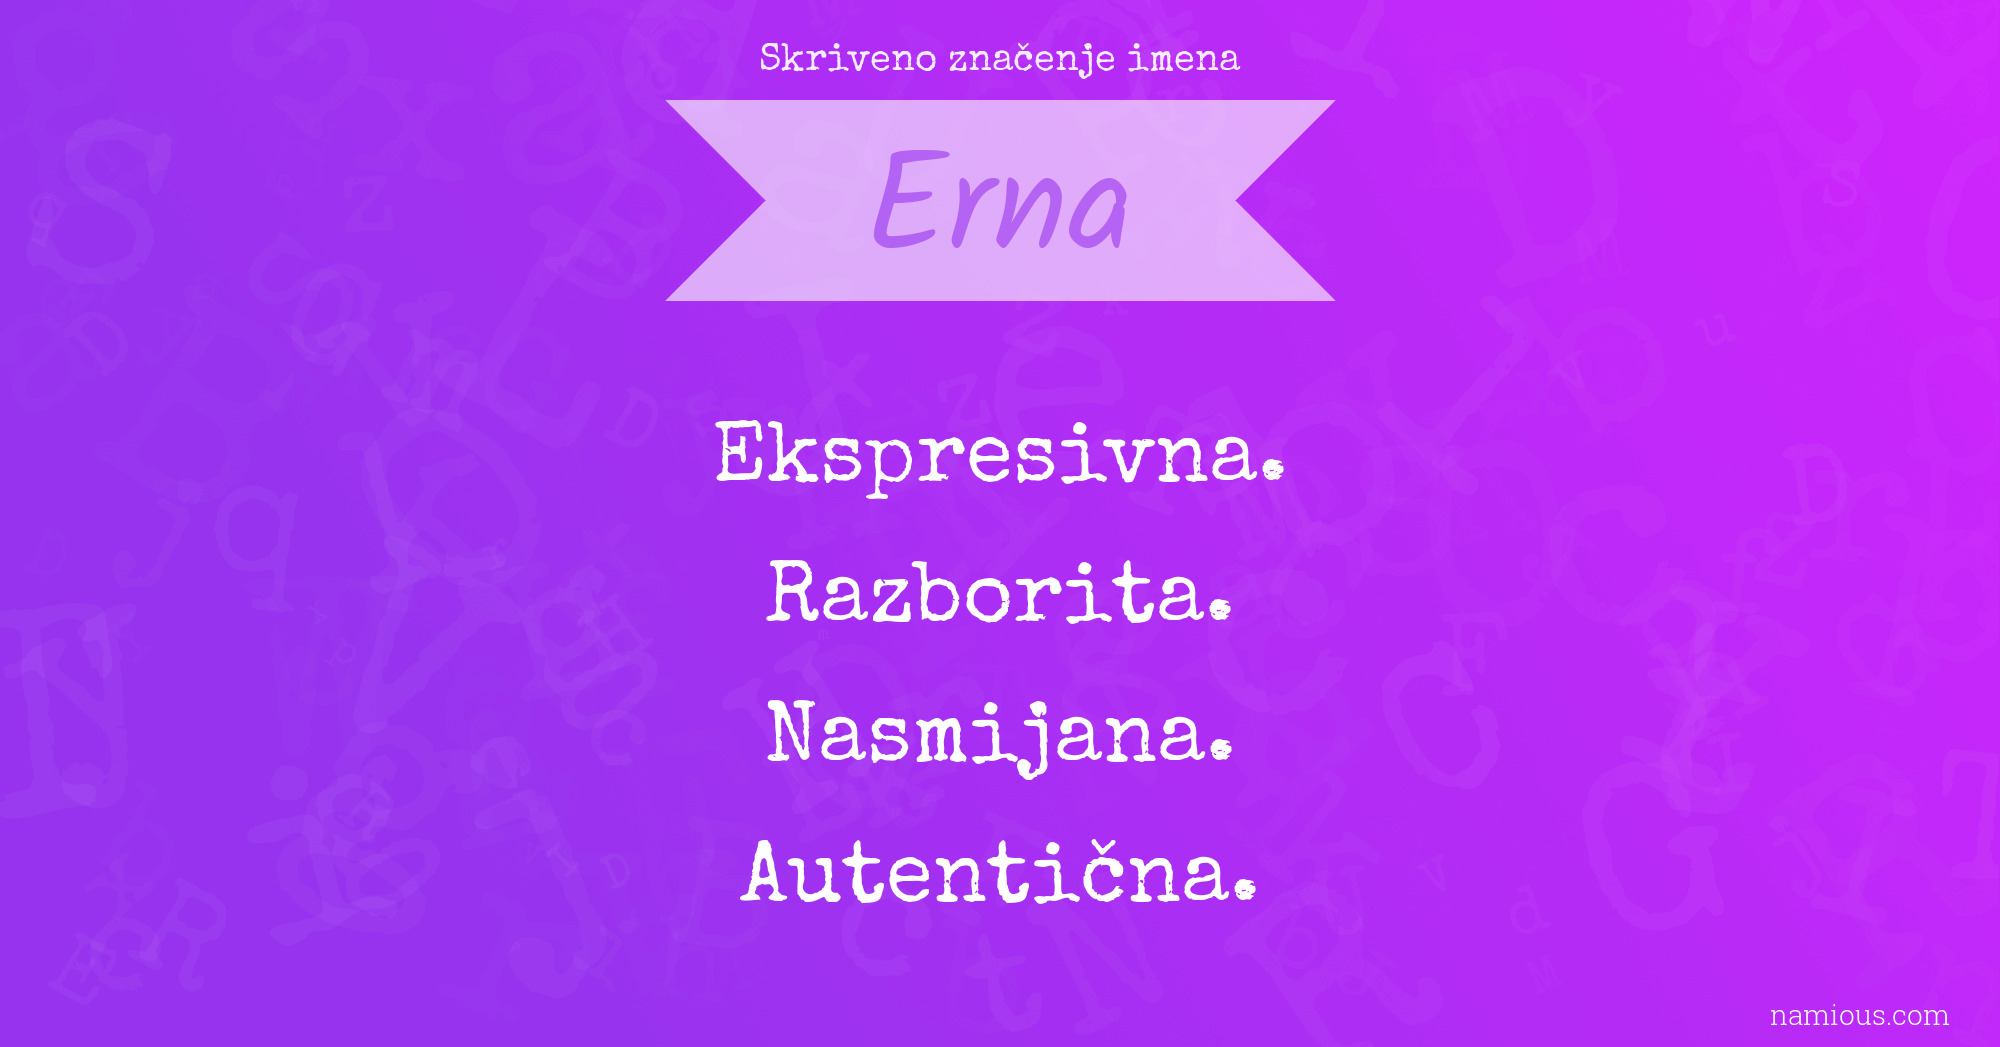 Skriveno značenje imena Erna